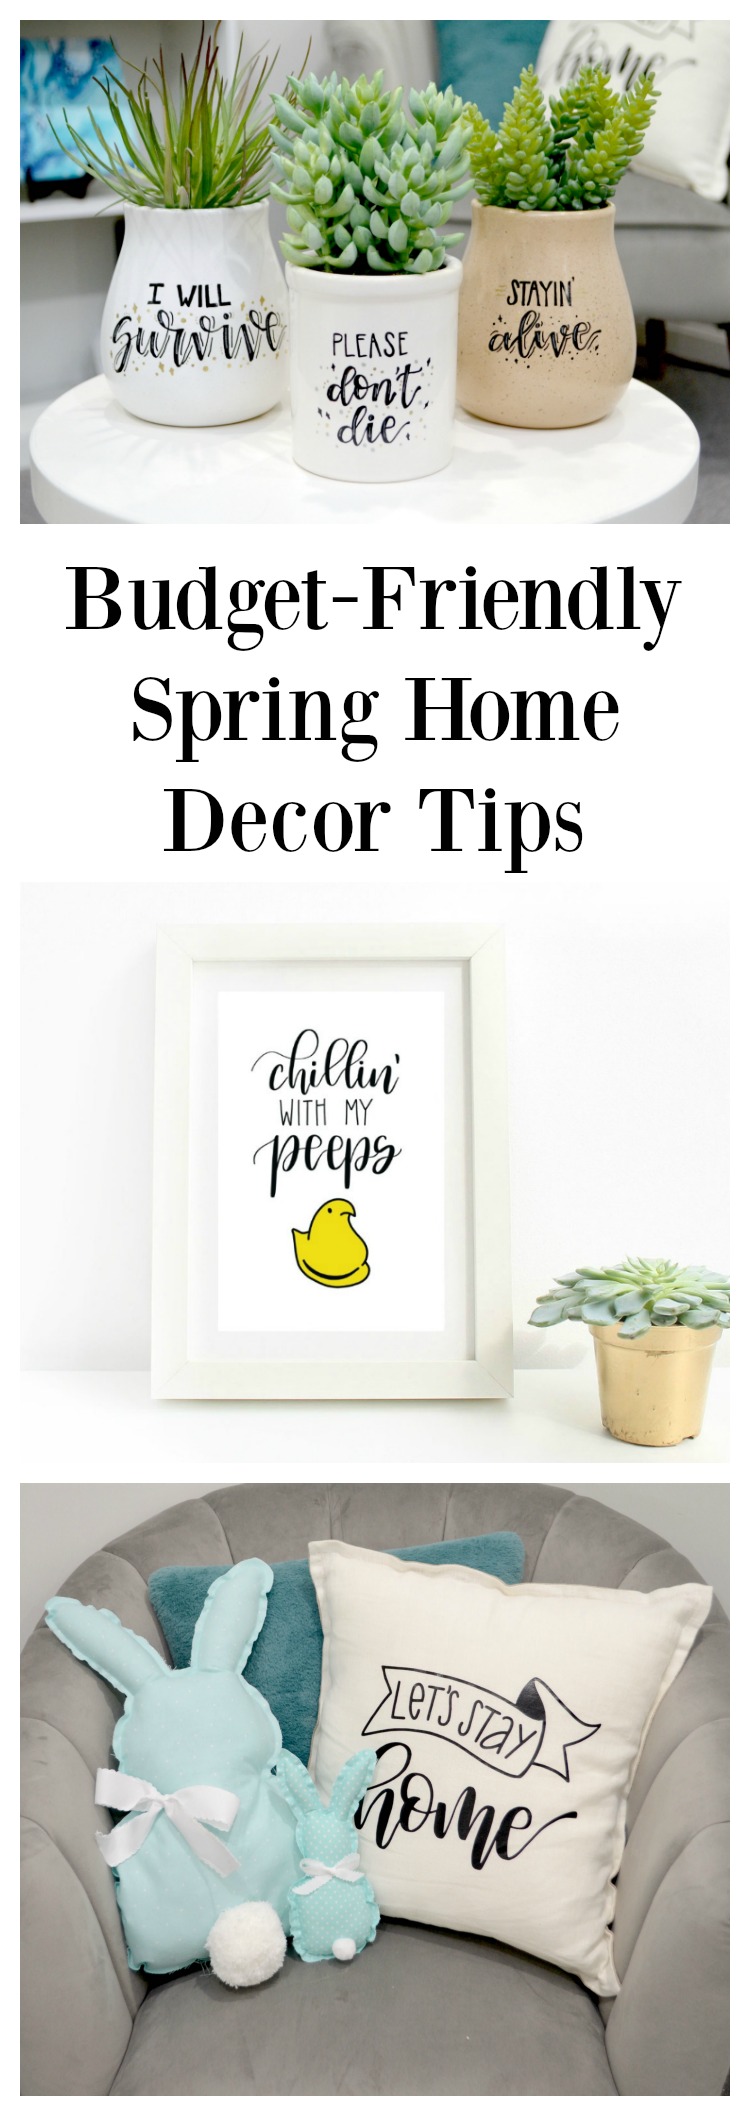 Spring Home Decor Tips